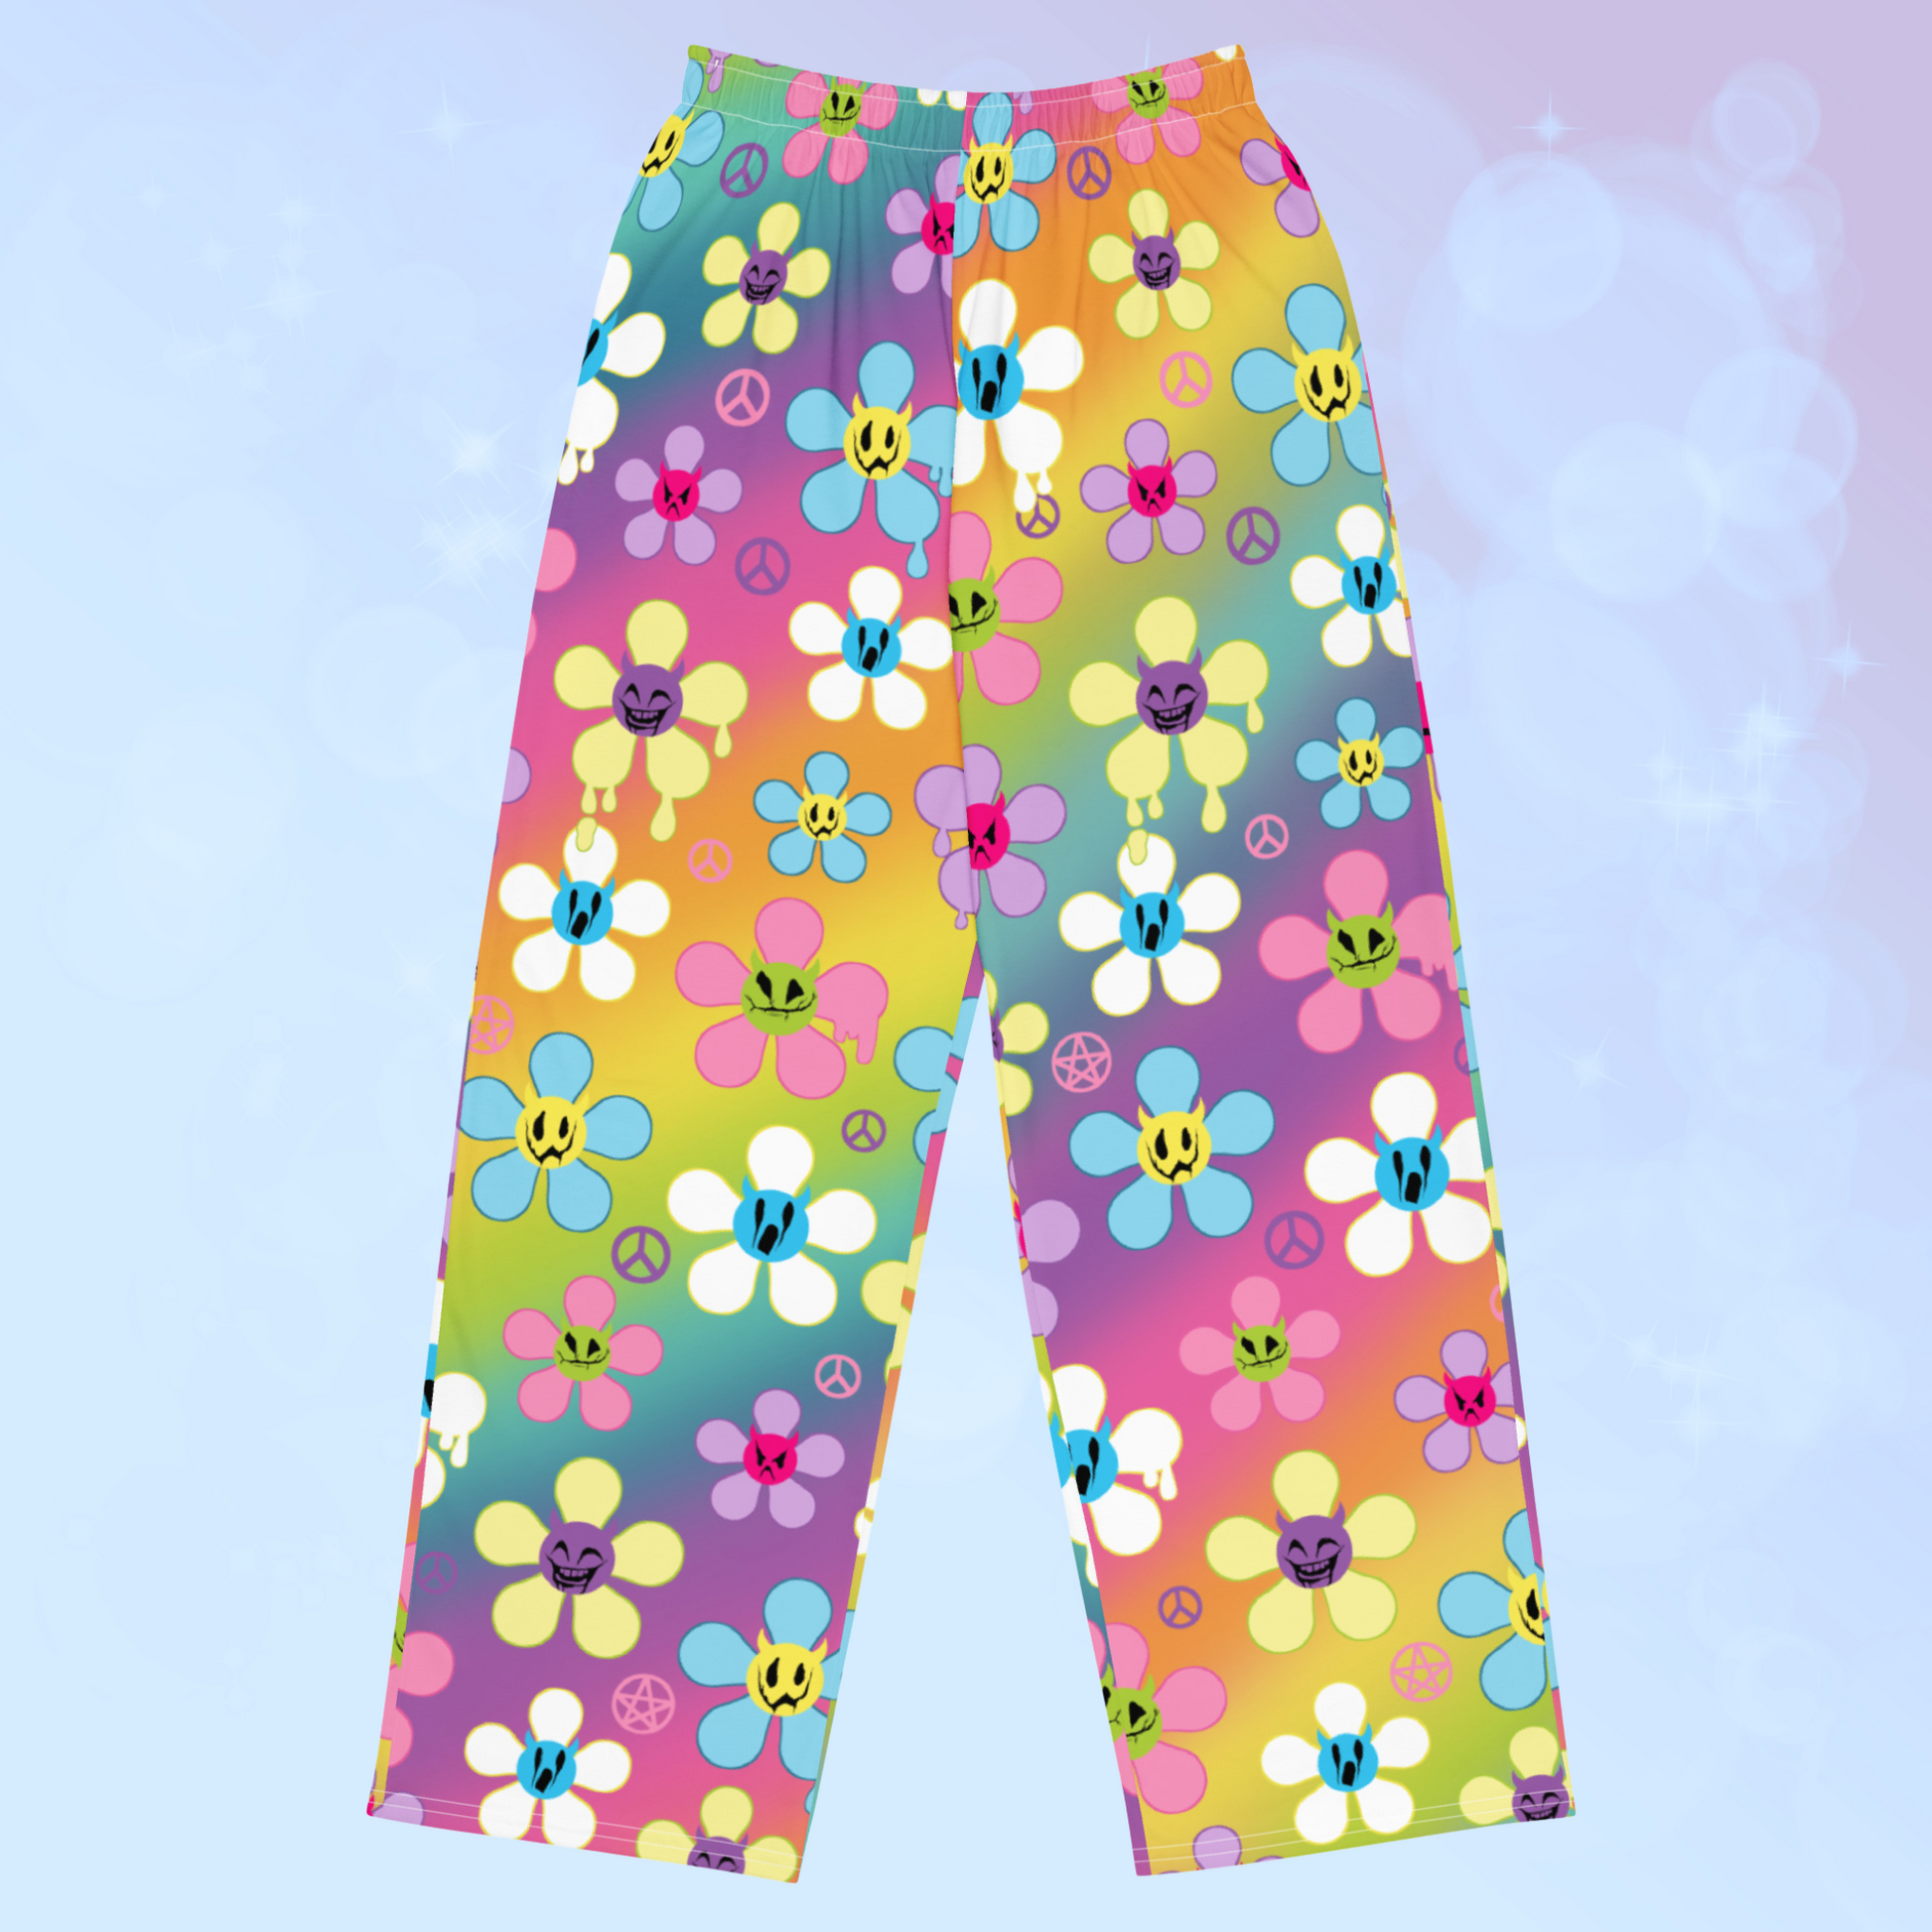 Kawaii pants, Retro Y2K pants, pastel goth fashion, rainbow creepy cute pants.